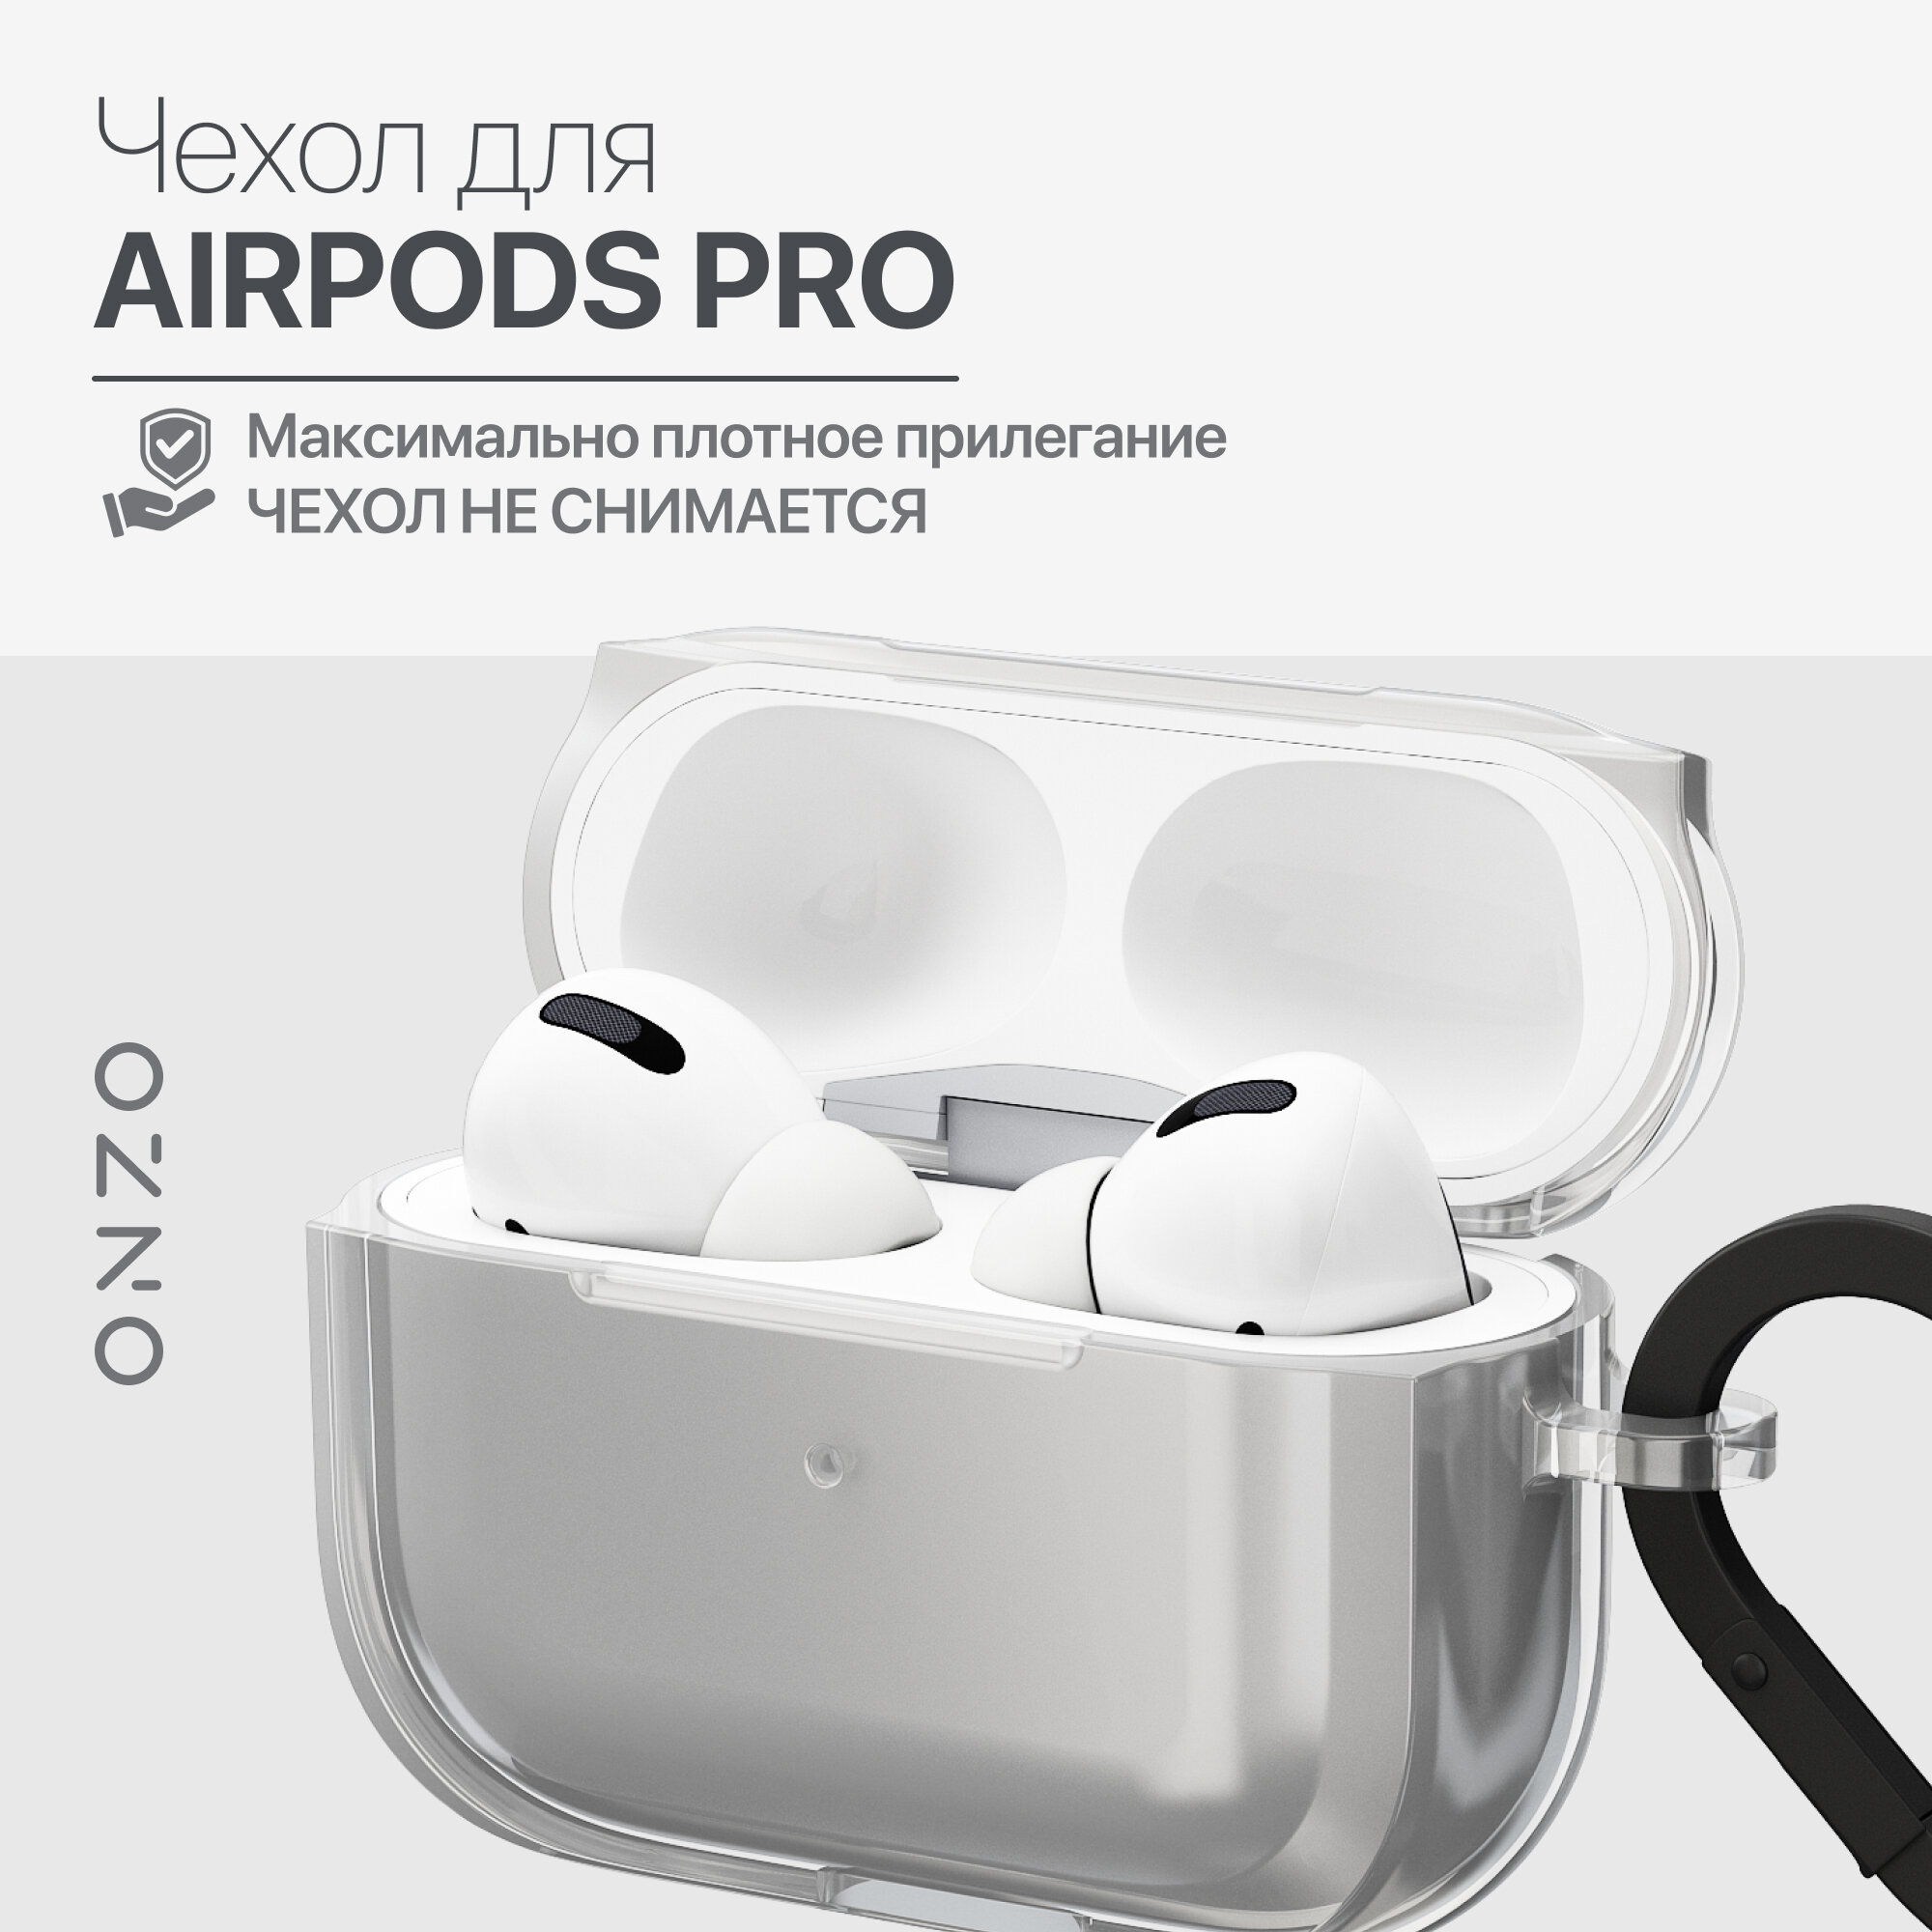 Прозрачный чехол на Apple Airpods Pro / Эирподс про кейс защитный, тонкий, с металлическим кольцом